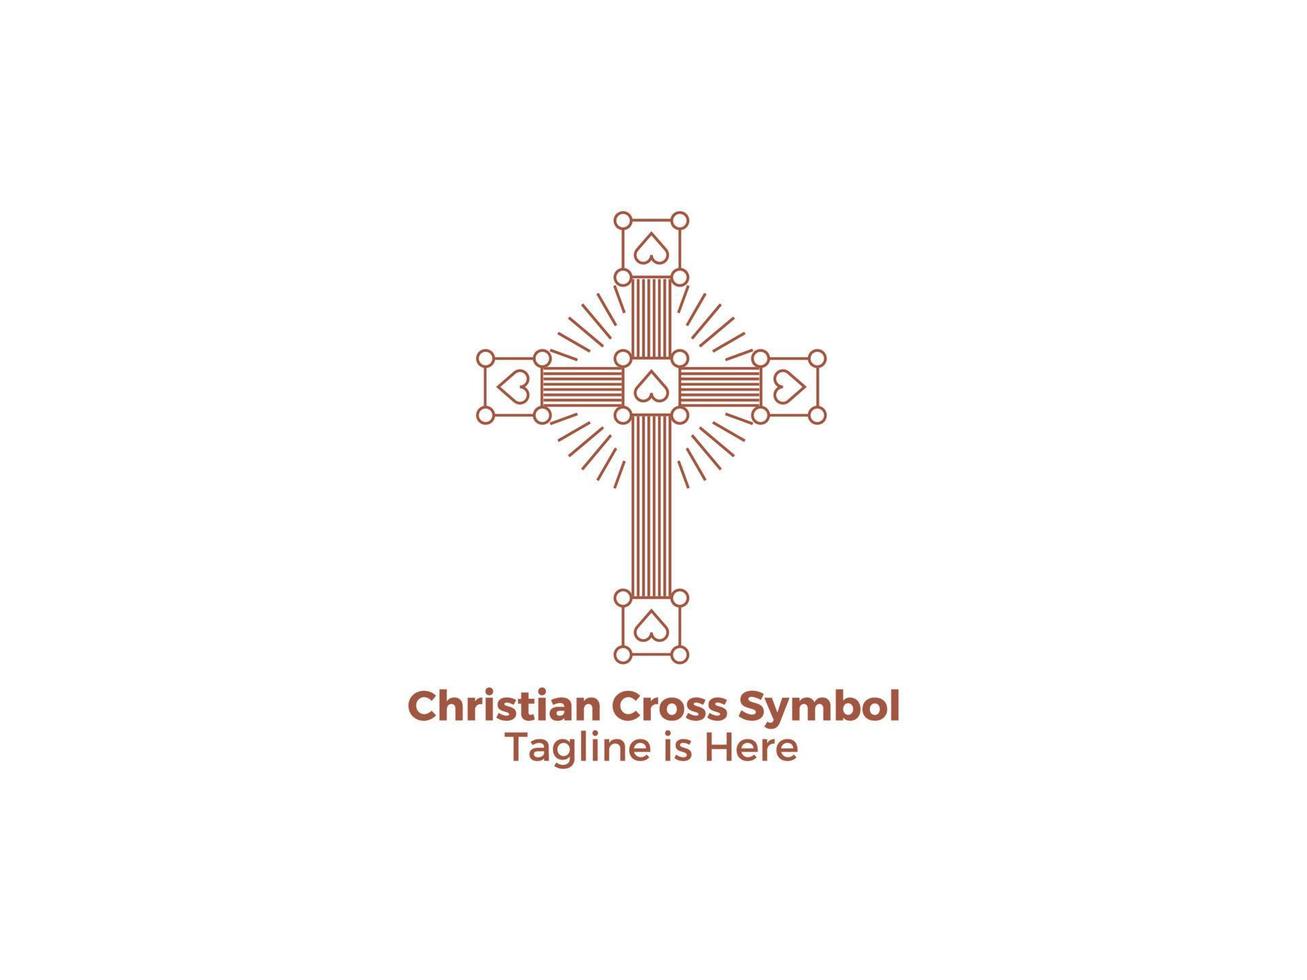 das kreuz ist ein symbol der christentums-katholischen religion die kirche von jesus freies vektordesign vektor